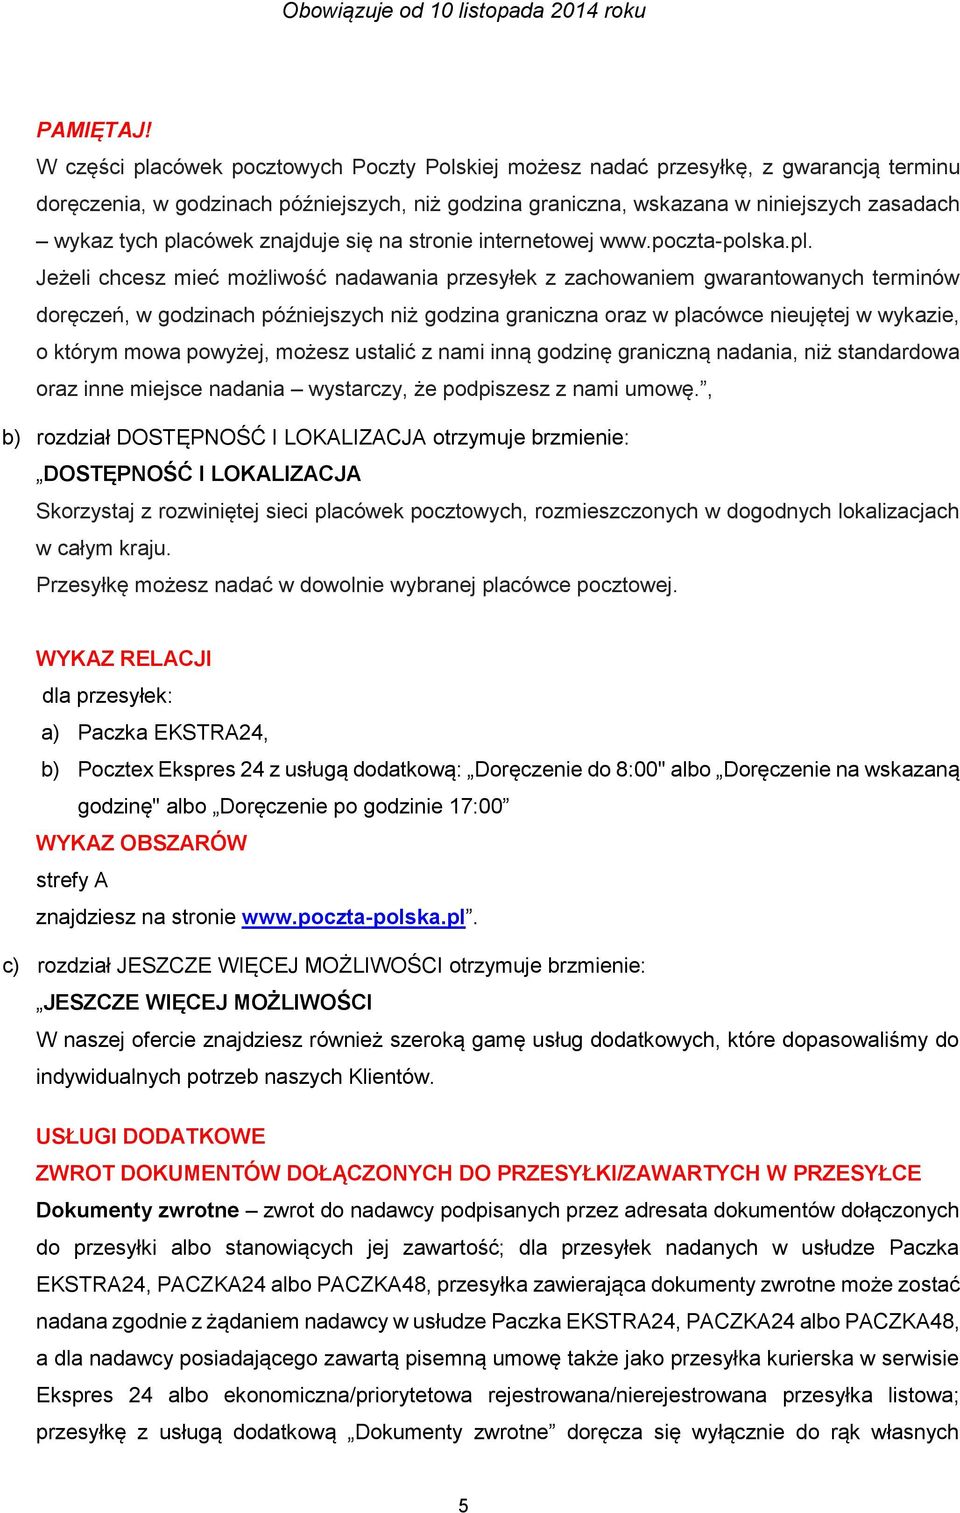 placówek znajduje się na stronie internetowej www.poczta-polska.pl. Jeżeli chcesz mieć możliwość nadawania przesyłek z zachowaniem gwarantowanych terminów doręczeń, w godzinach późniejszych niż